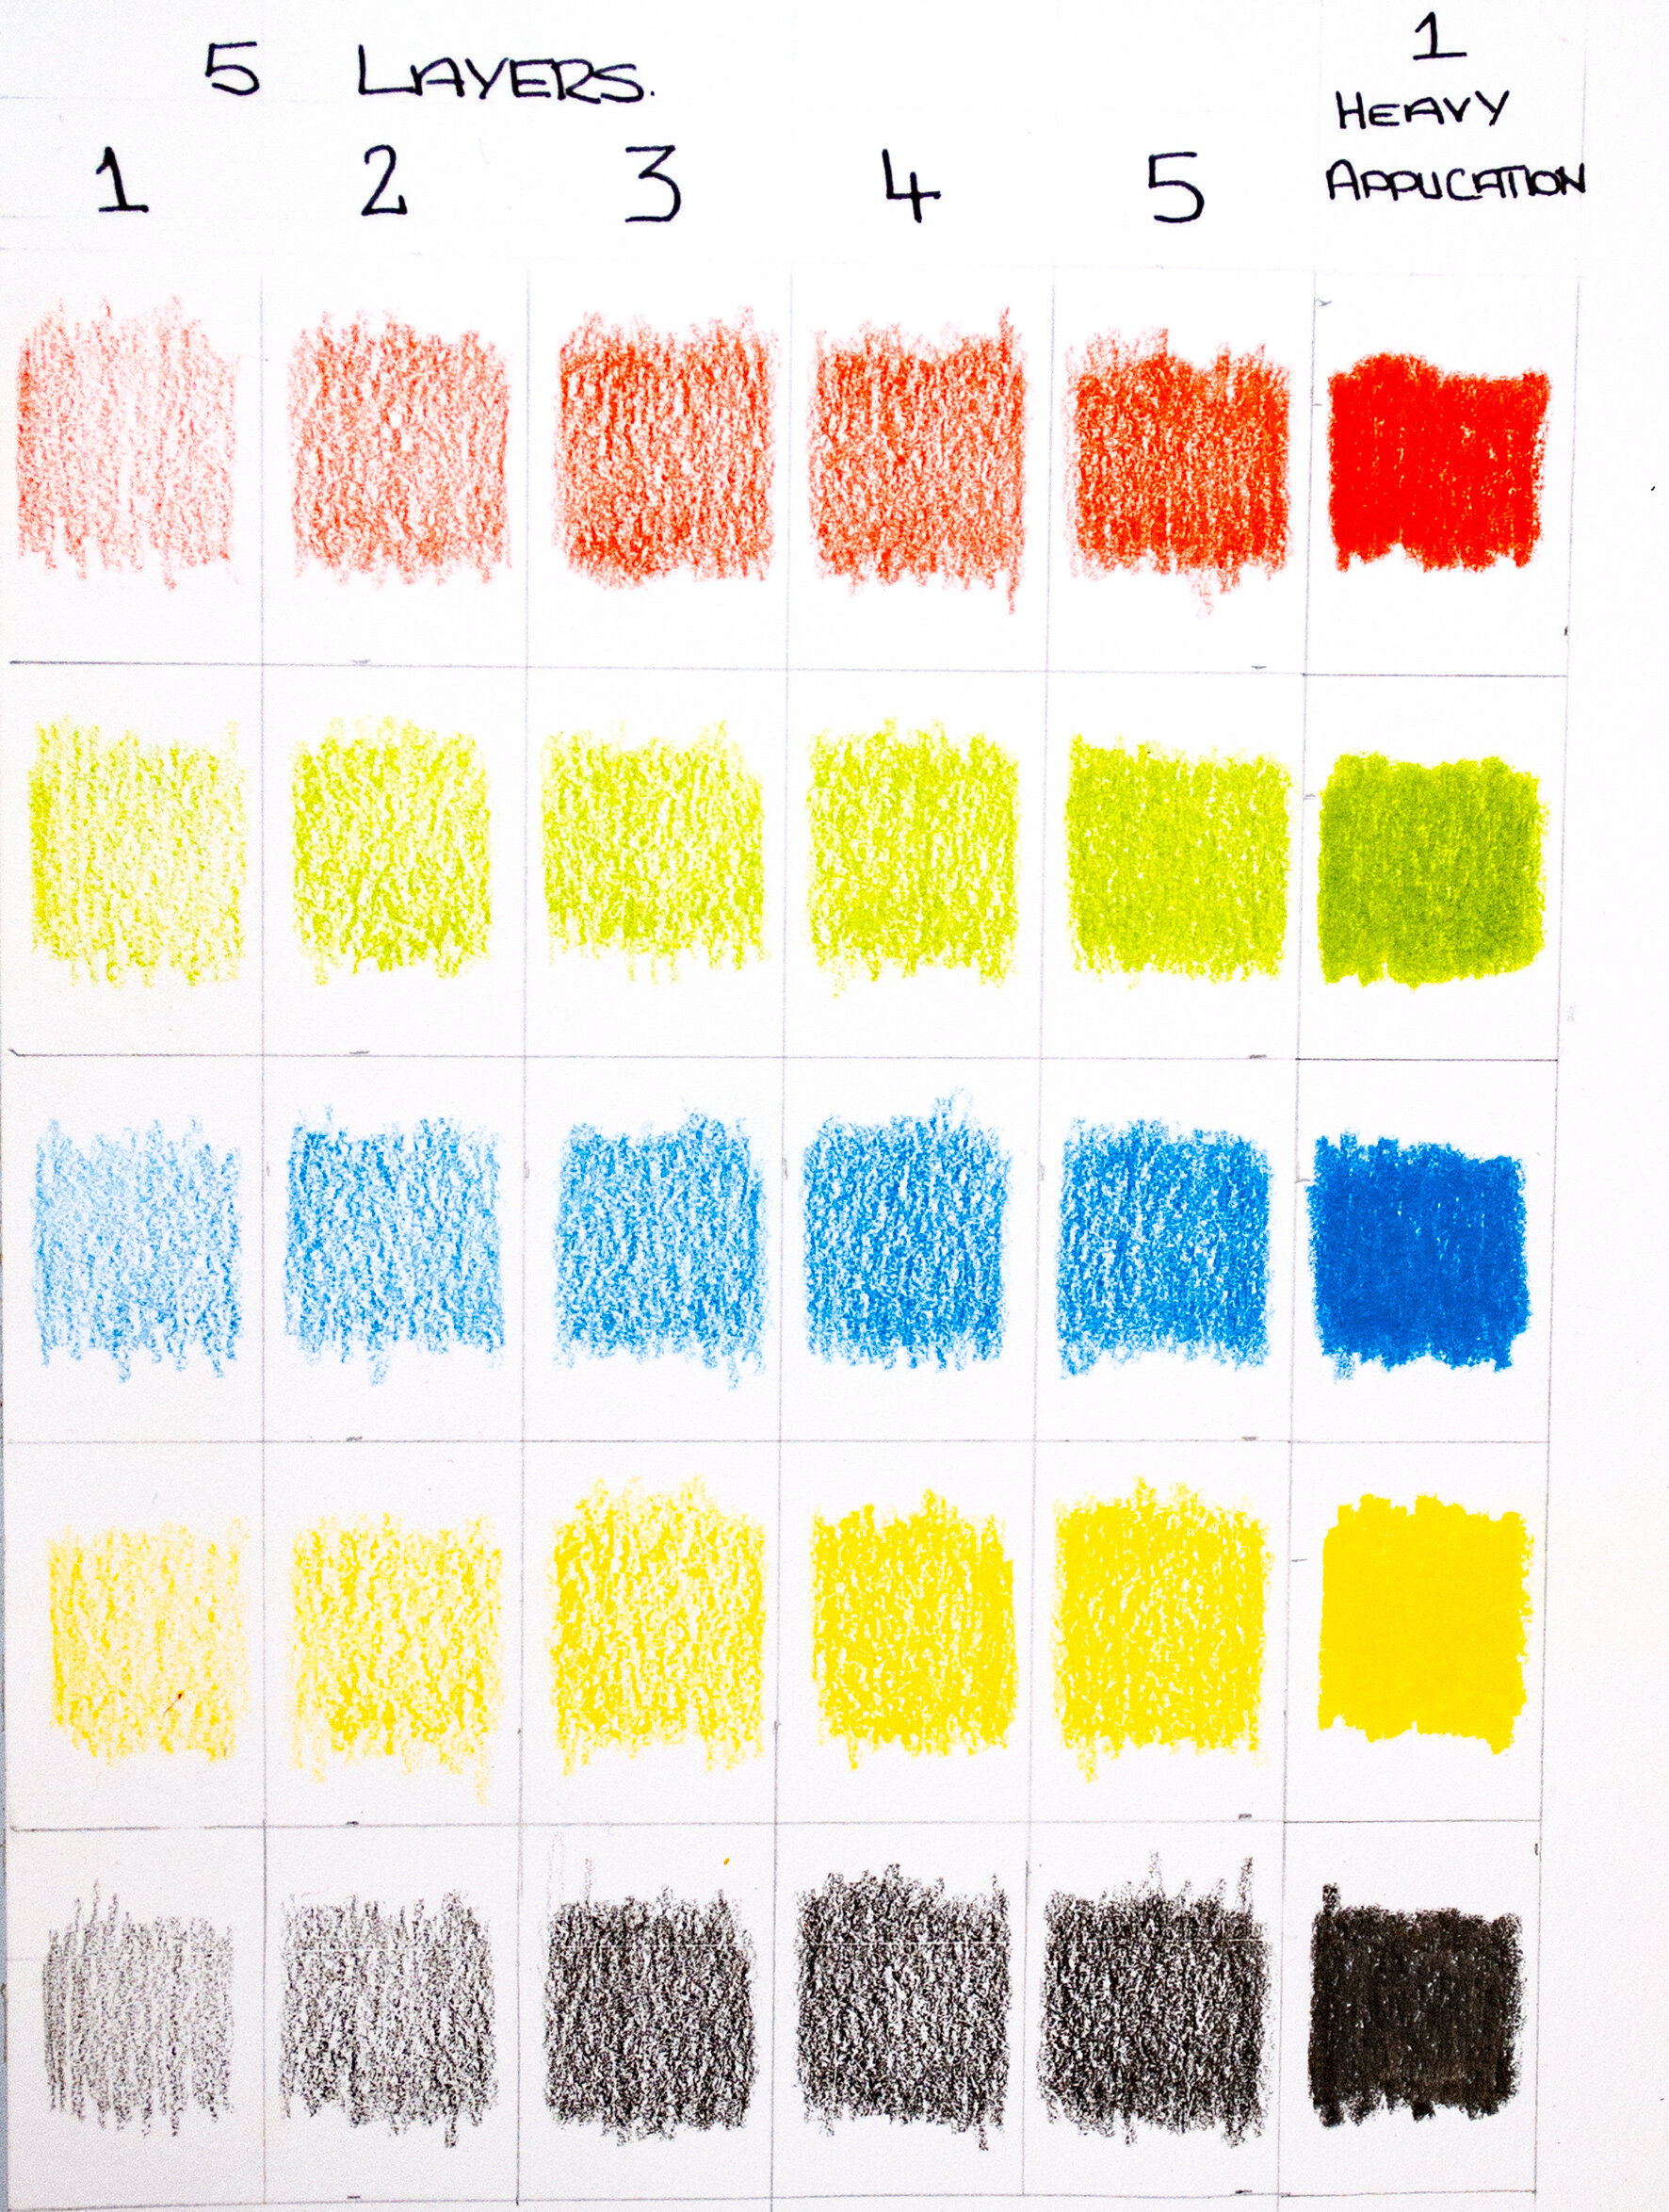 Lyra Rembrandt Polycolor Pencils - نظرية الألوان